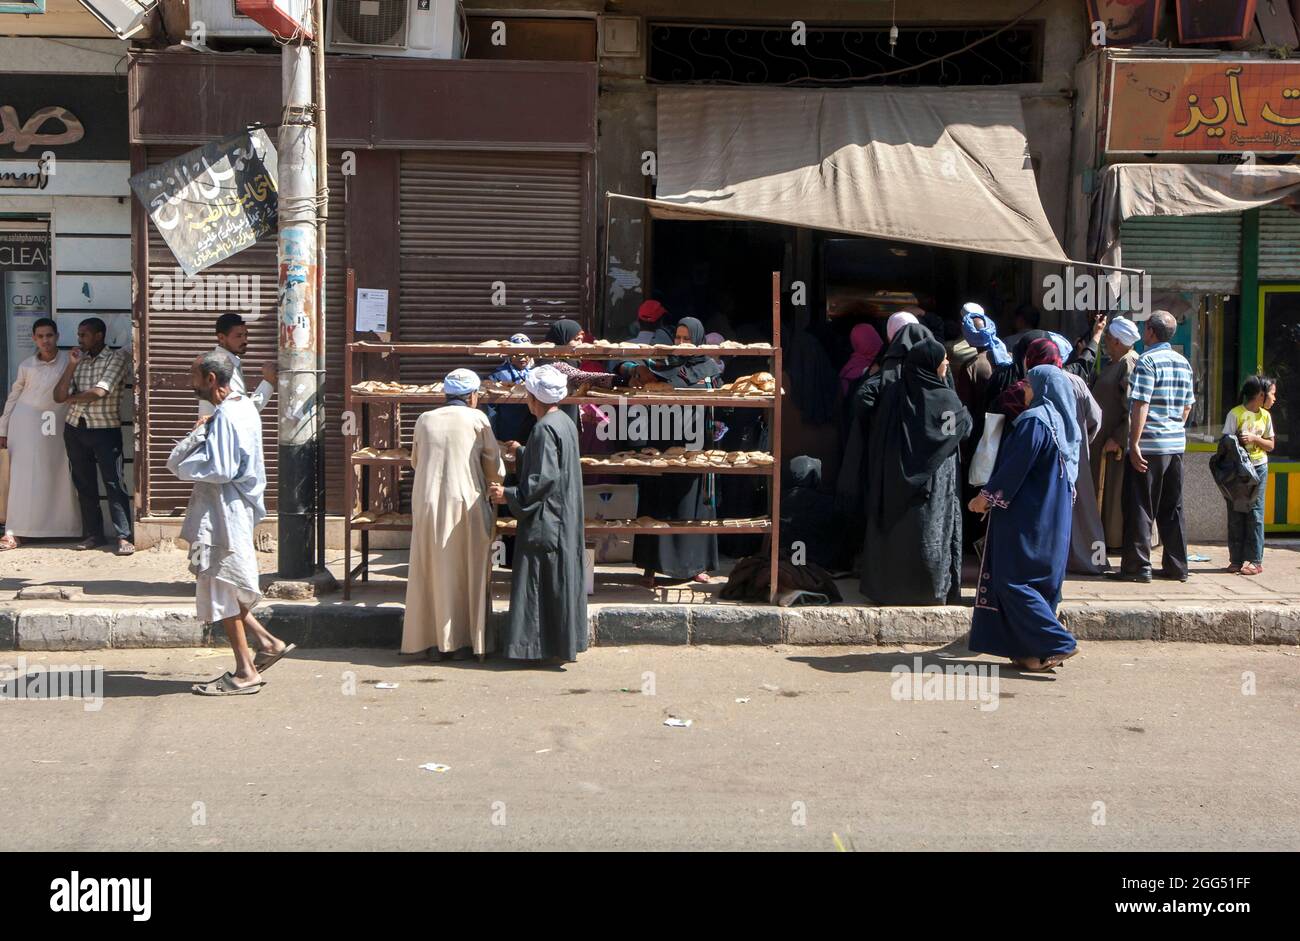 Les gens se rassemblent à l'entrée d'une boulangerie dans une rue d'Edfu, dans le centre de l'Égypte. Banque D'Images